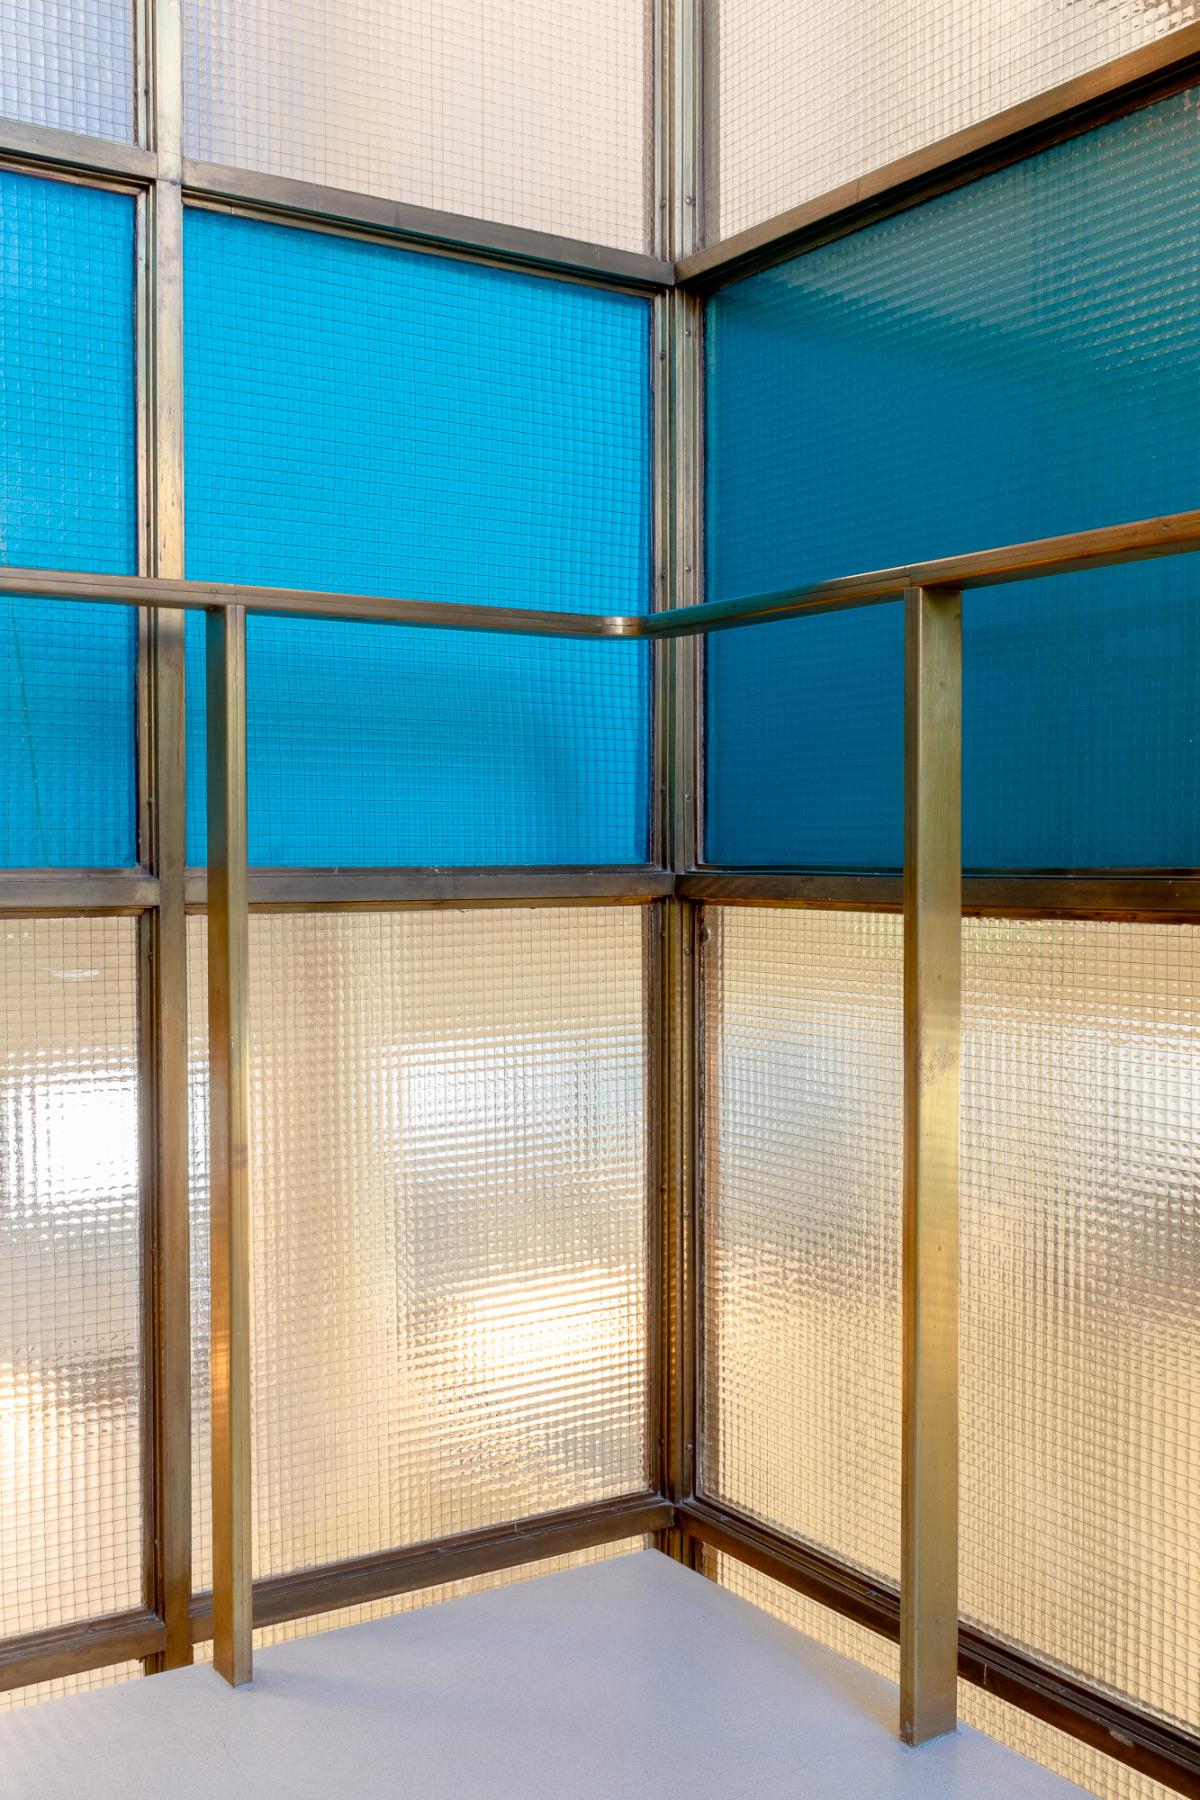 Kuva osittain sinisestä, osittain värittömästä lasiseinästä jossa rusehtavat metallireunukset